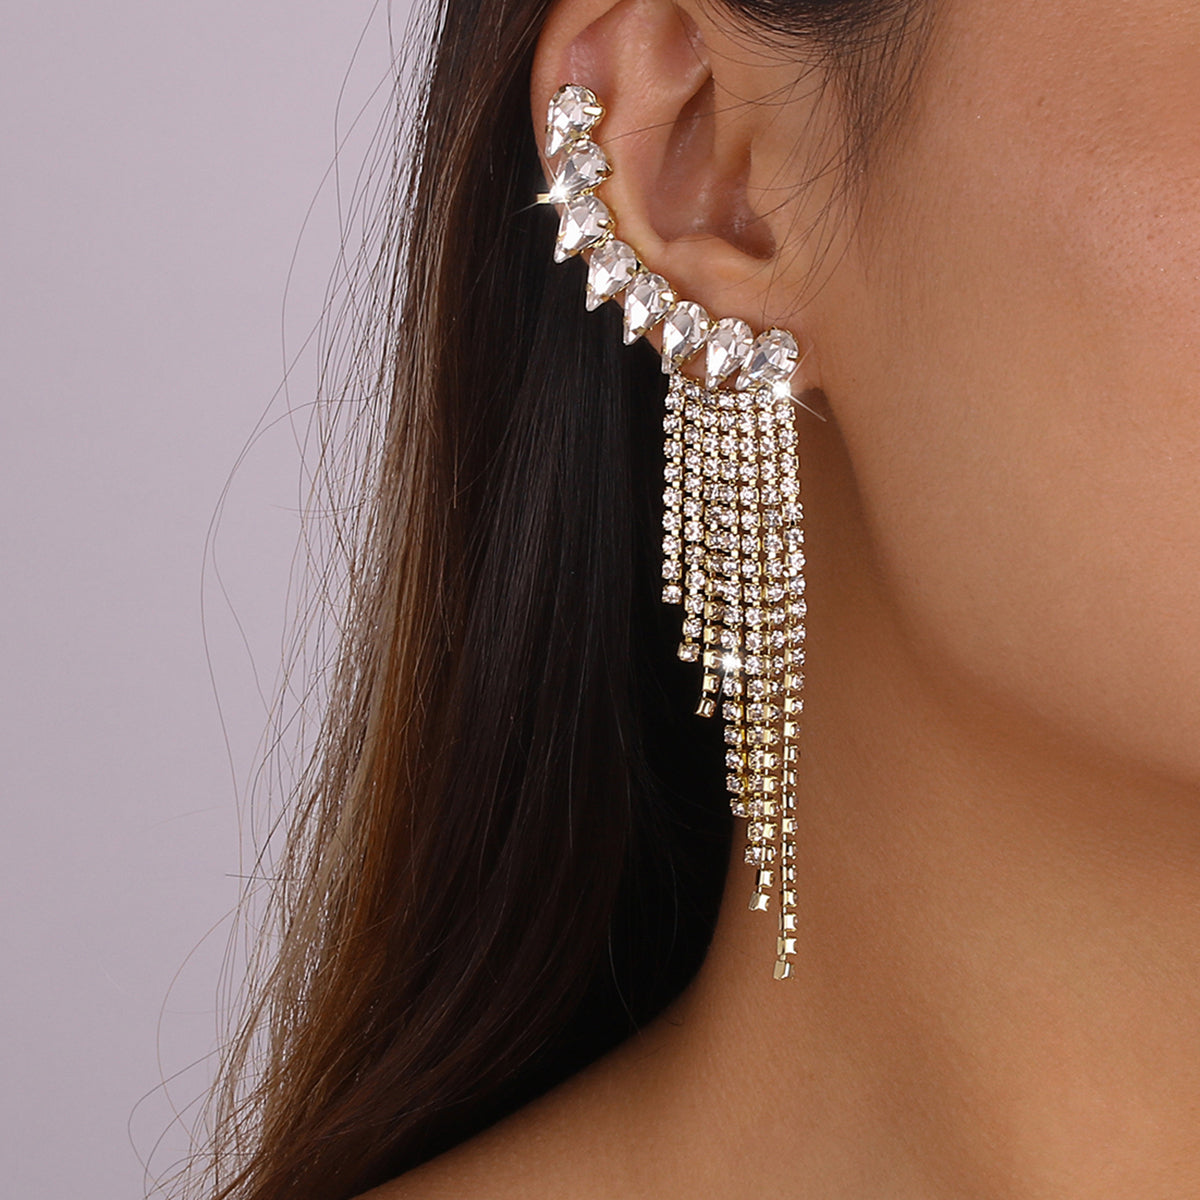 Shiny Rhinestone Chain Long Tassel Drop Earrings medyjewelry